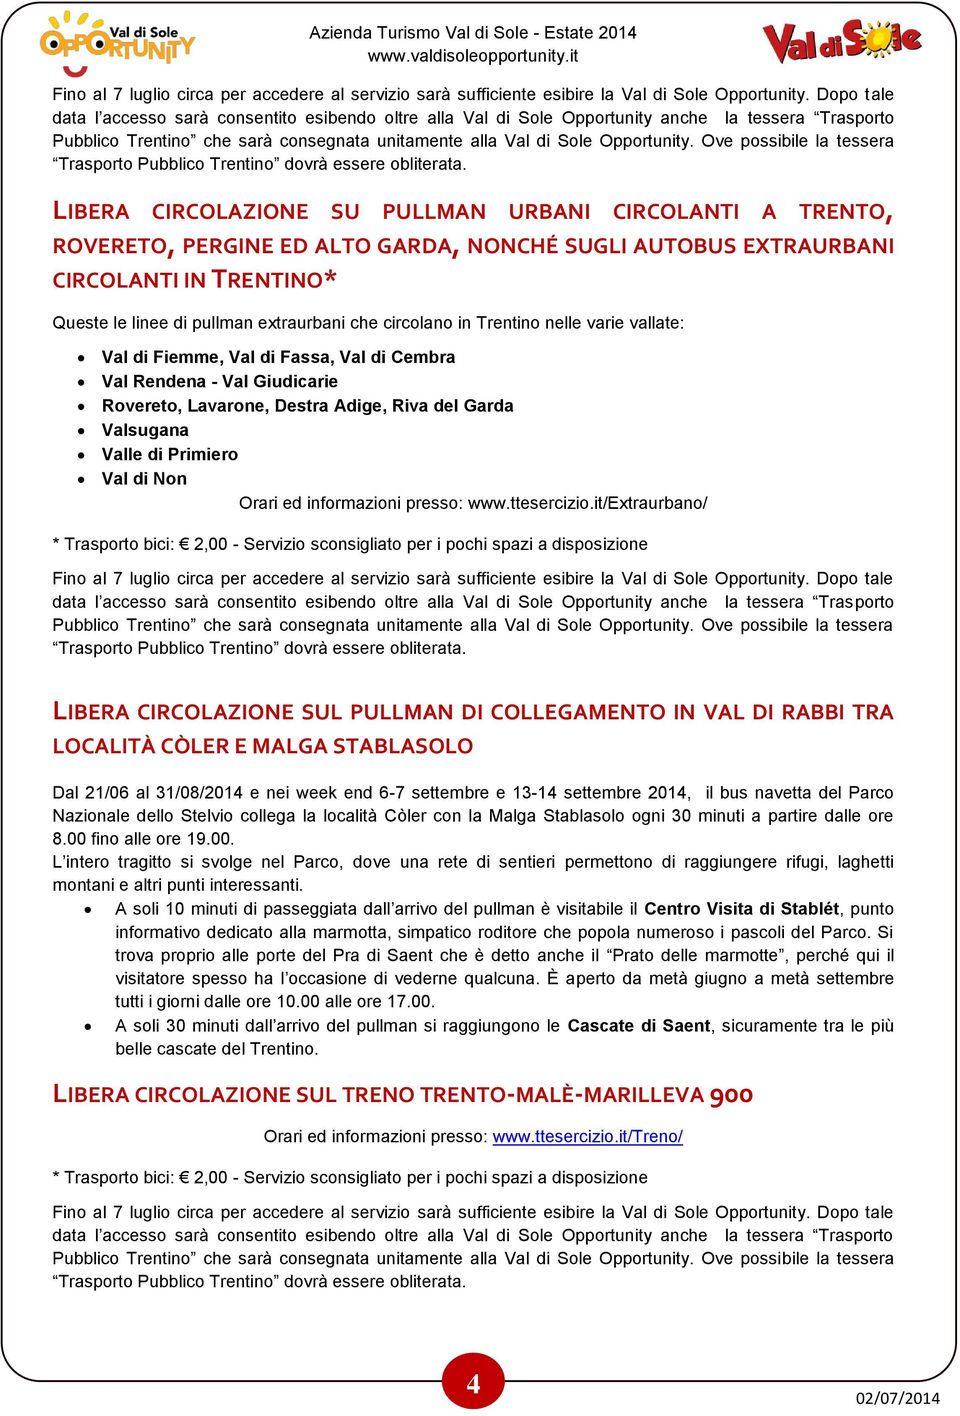 Ove possibile la tessera Trasporto Pubblico Trentino dovrà essere obliterata.